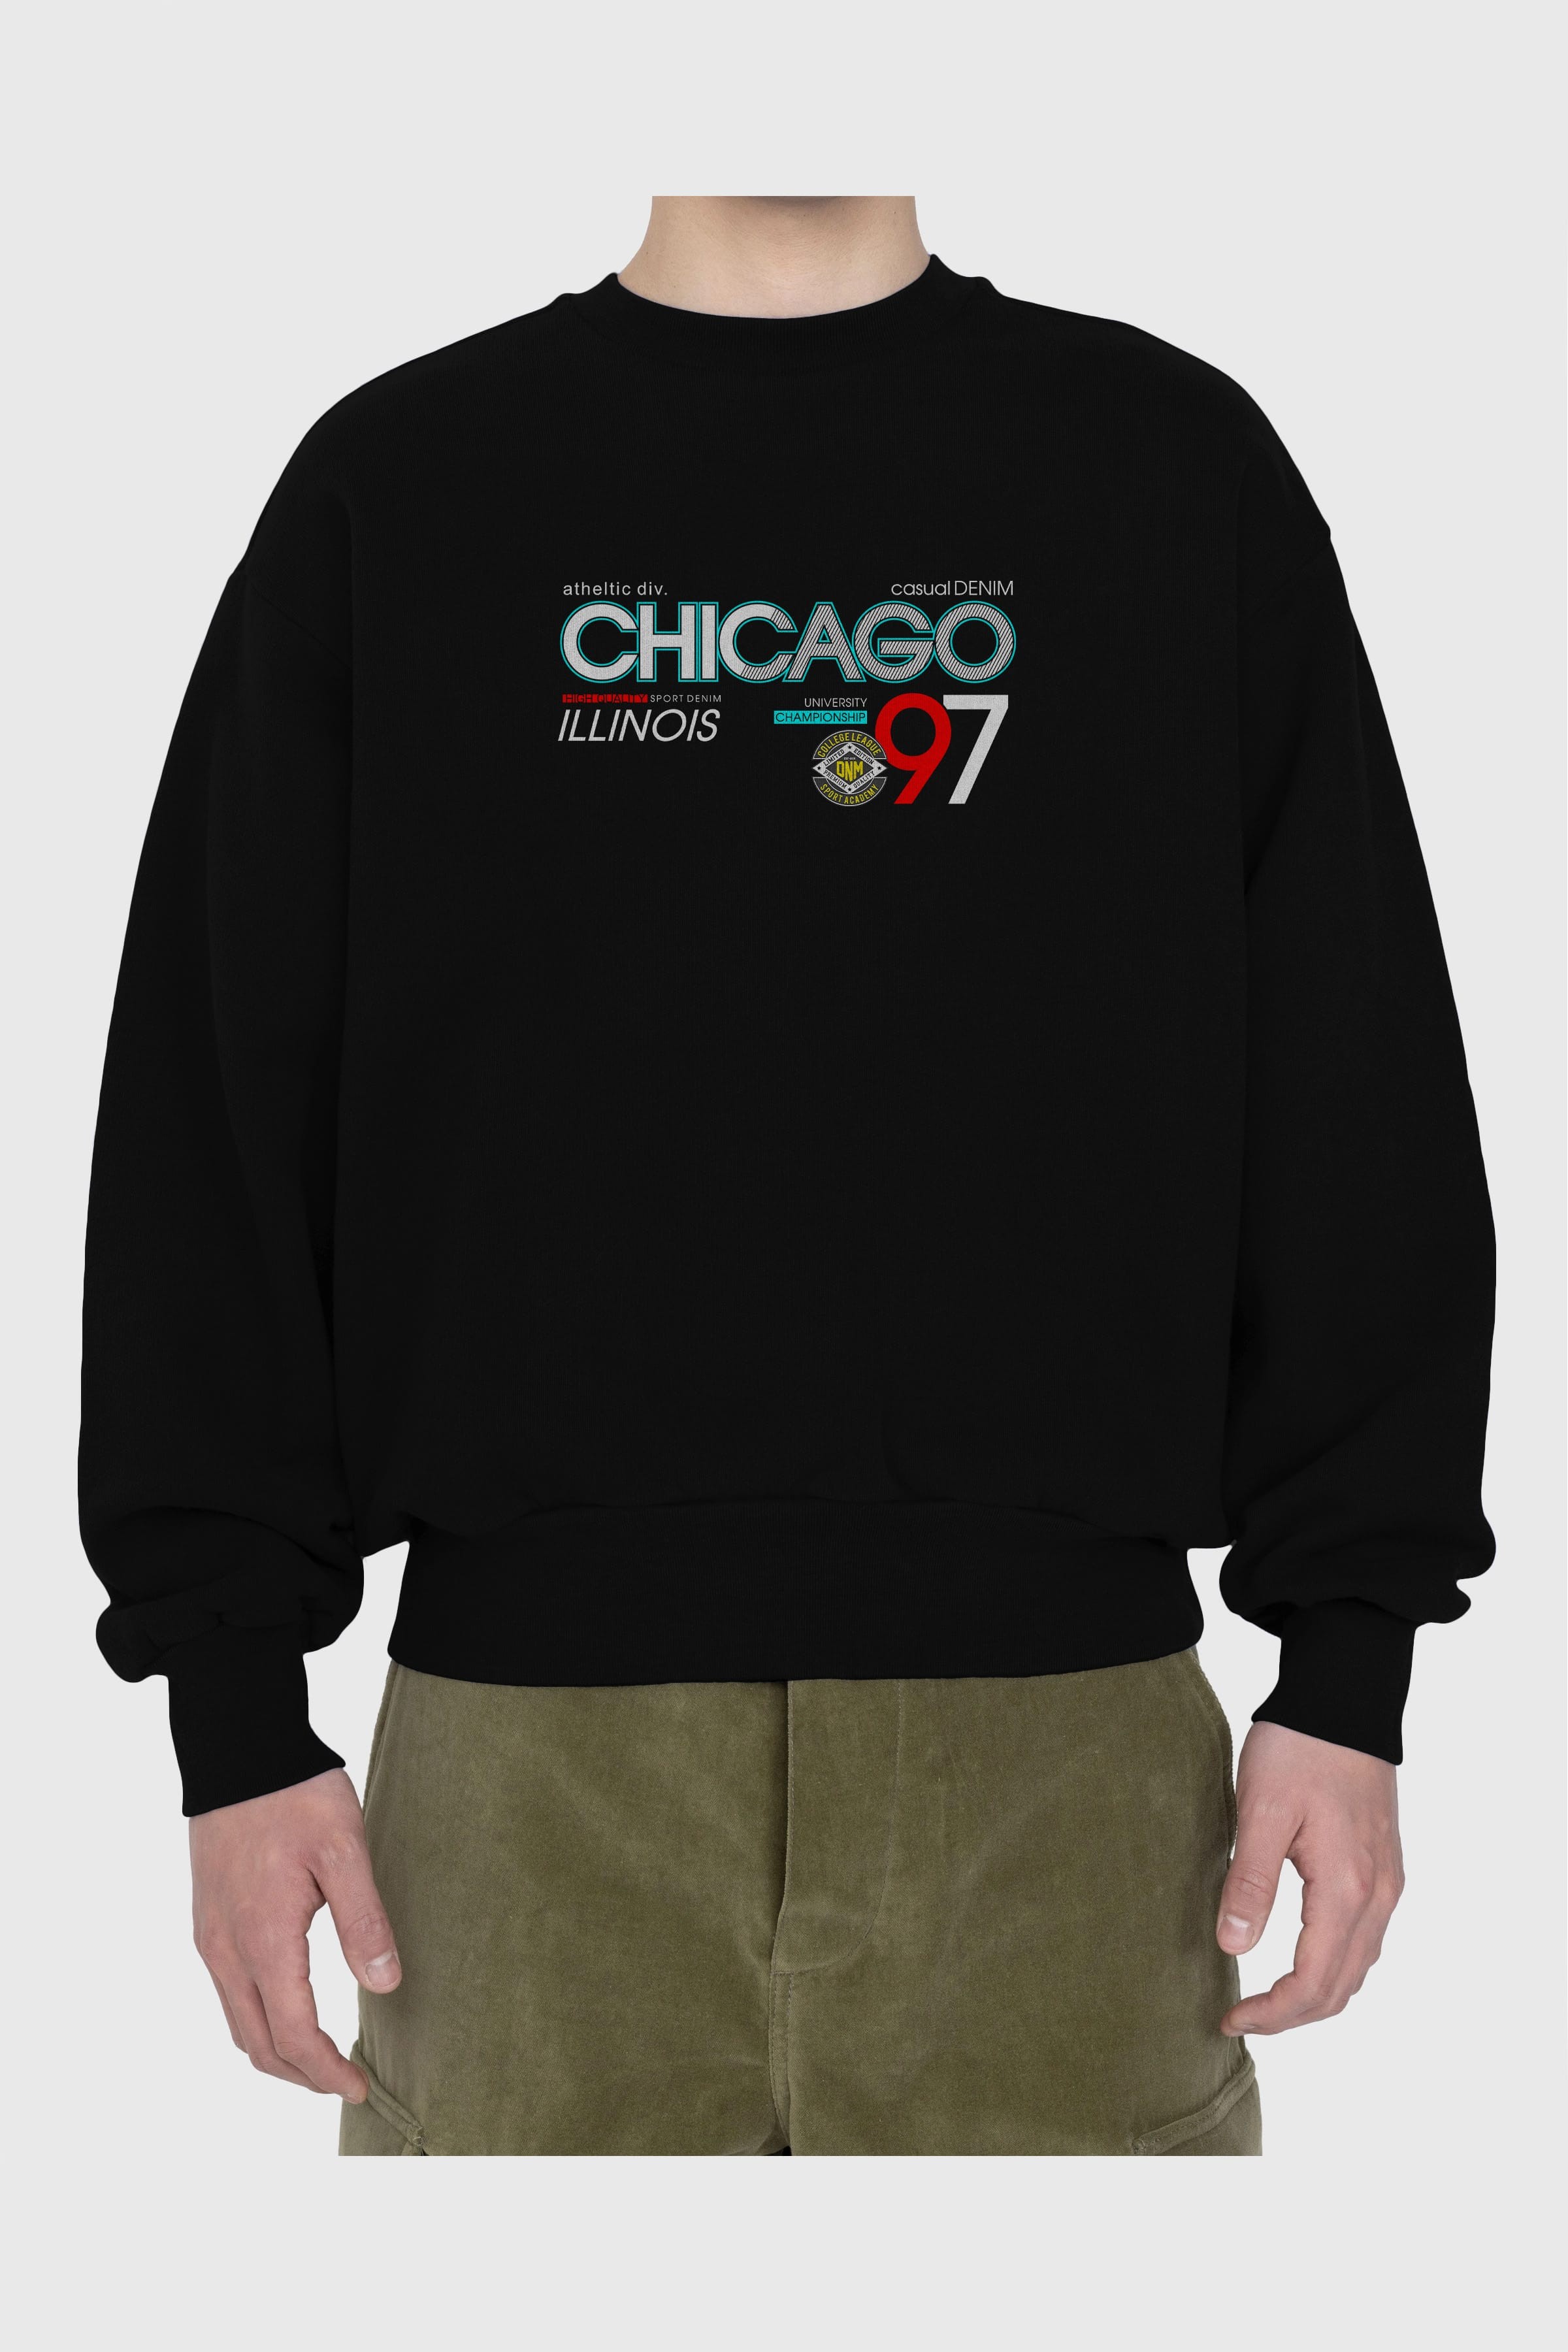 Chicago 97 Ön Baskılı Oversize Sweatshirt Erkek Kadın Unisex